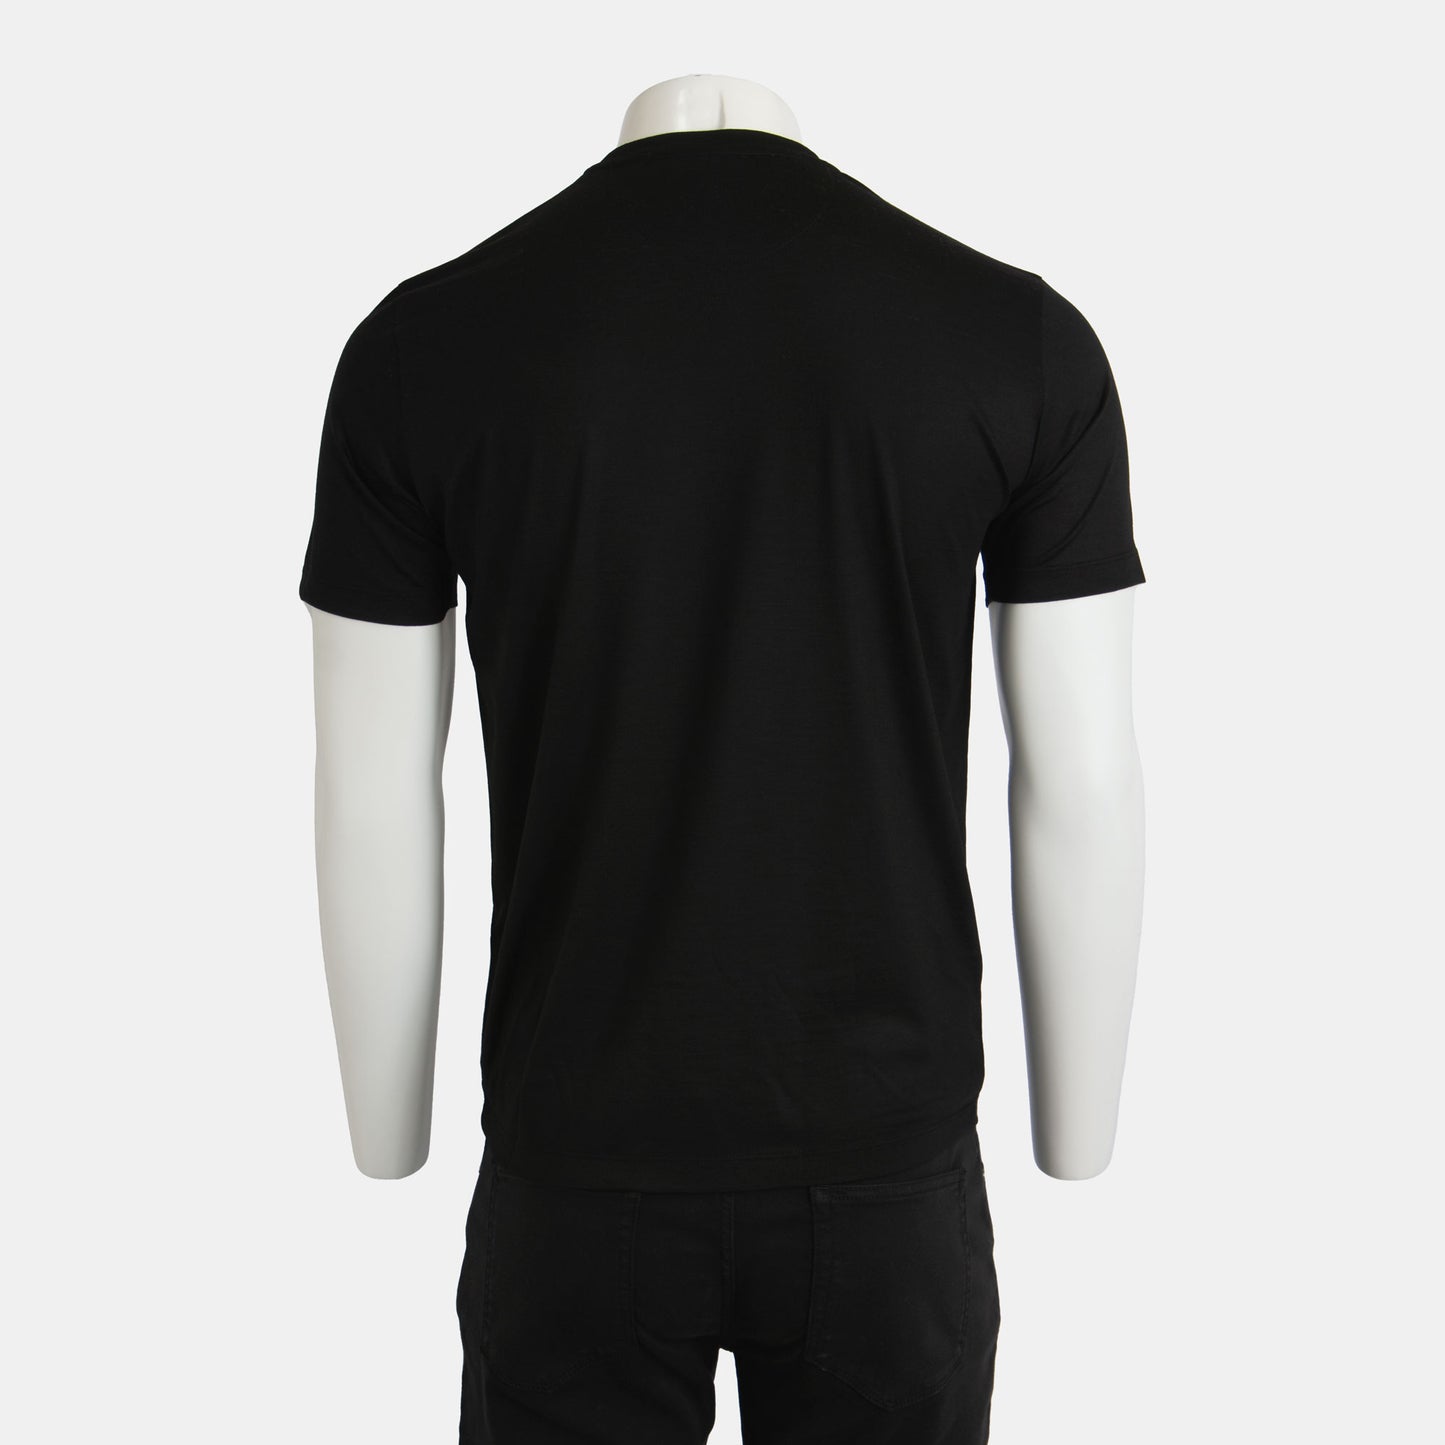 Maurizio Baldassari - The Pure Merino Wool T-Shirt in Black